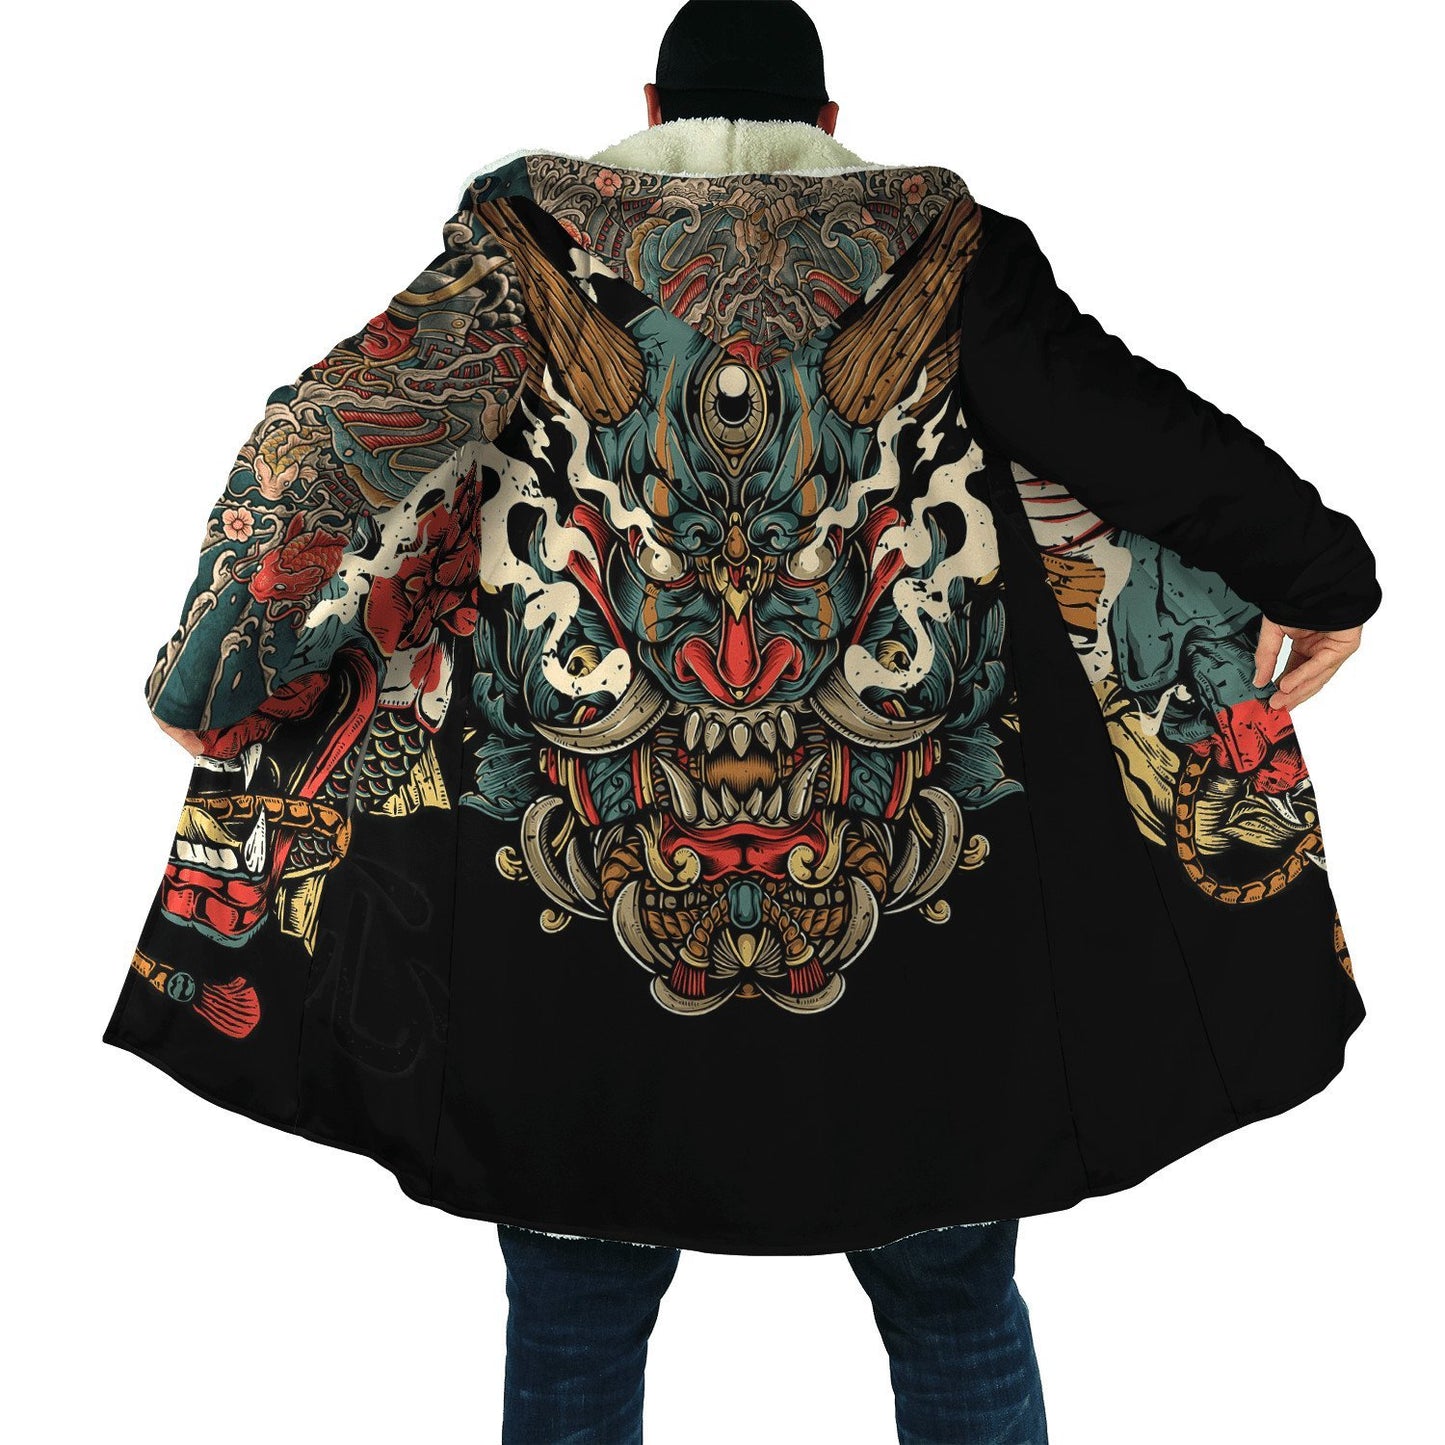 Irezumi Hooded Samurai Oni Cloak - Multiple Designs